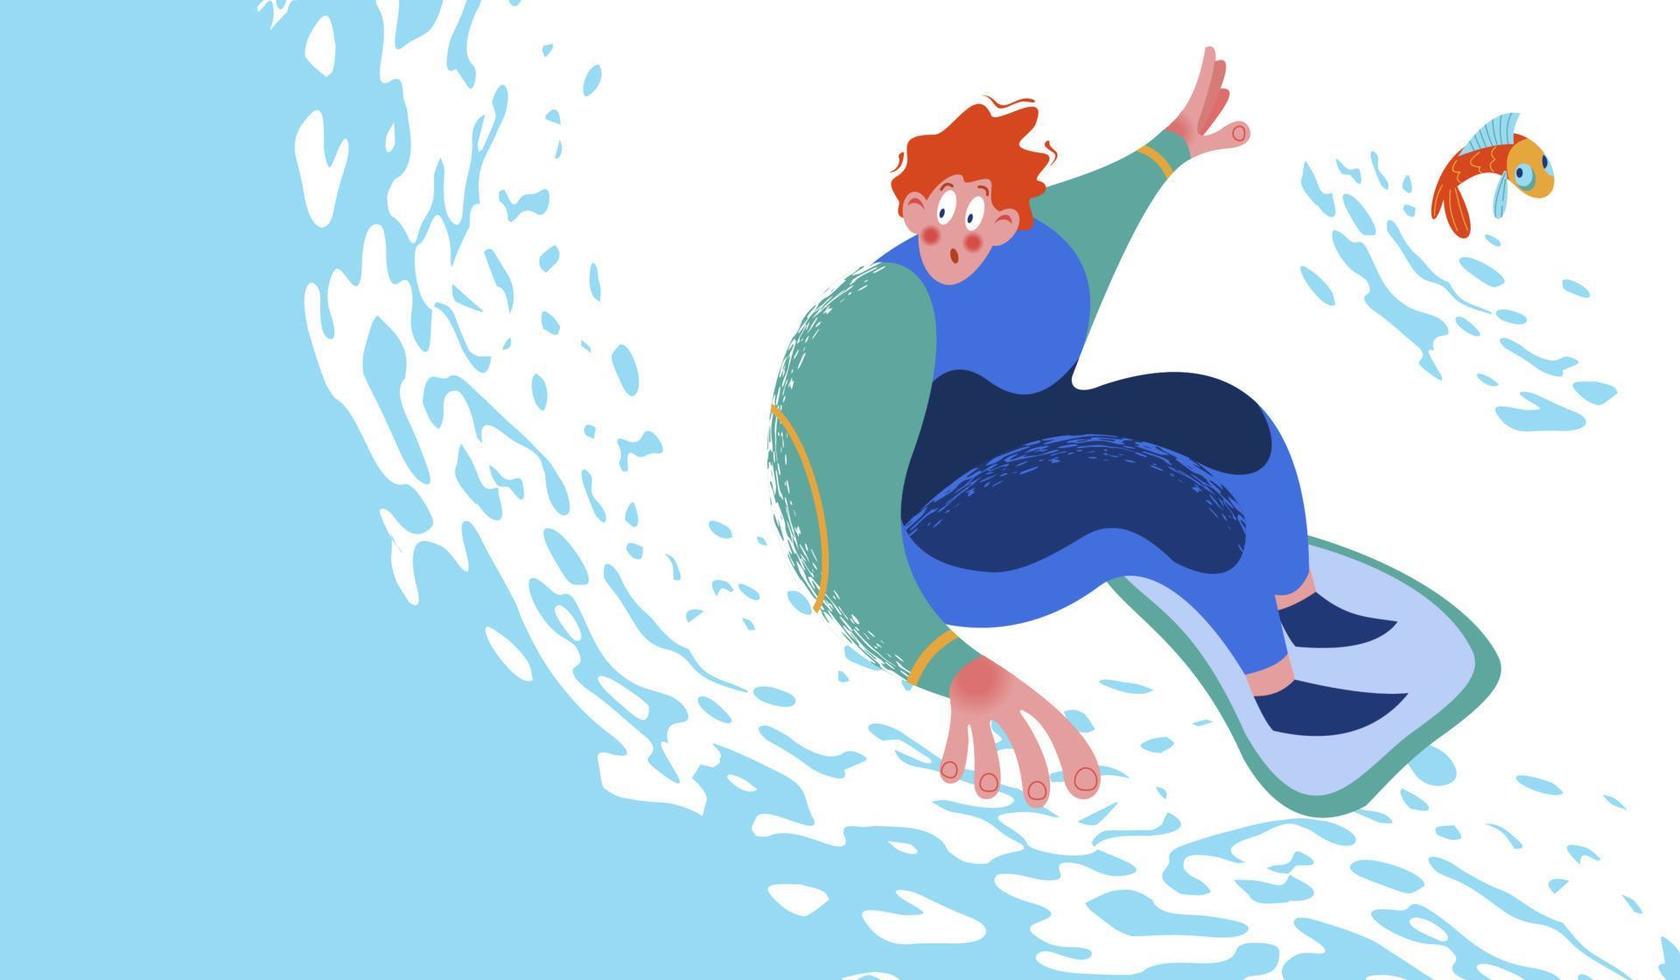 Surfer on wave. Extreme sport. Vector illustration.